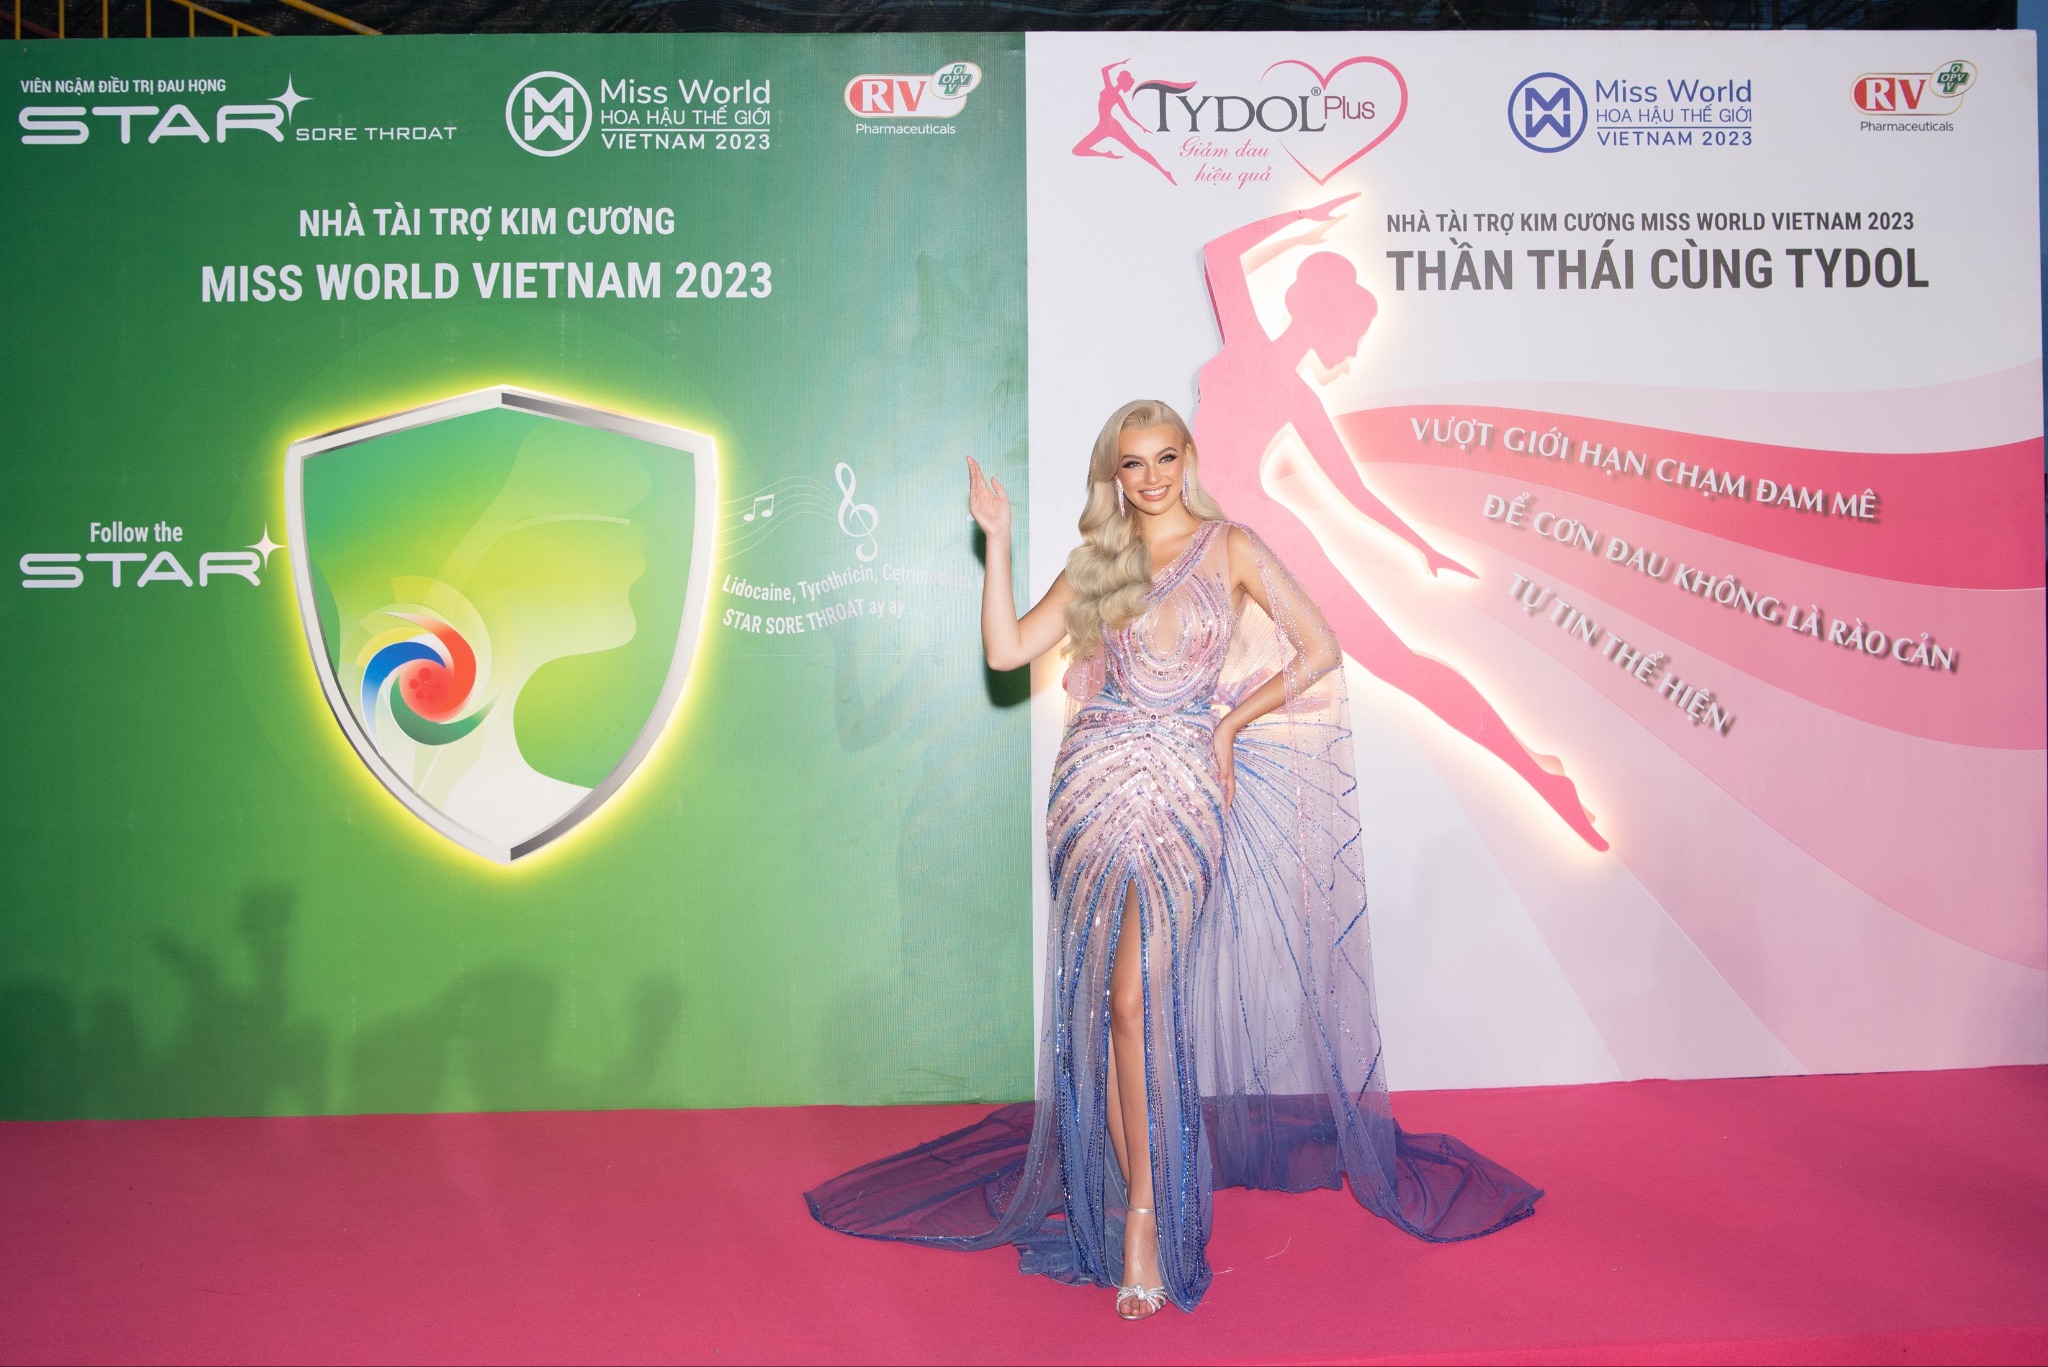 Nhãn hàng TYDOL Plus trao giải thưởng cho Tân Hoa hậu Miss World Vietnam 2023 - 1